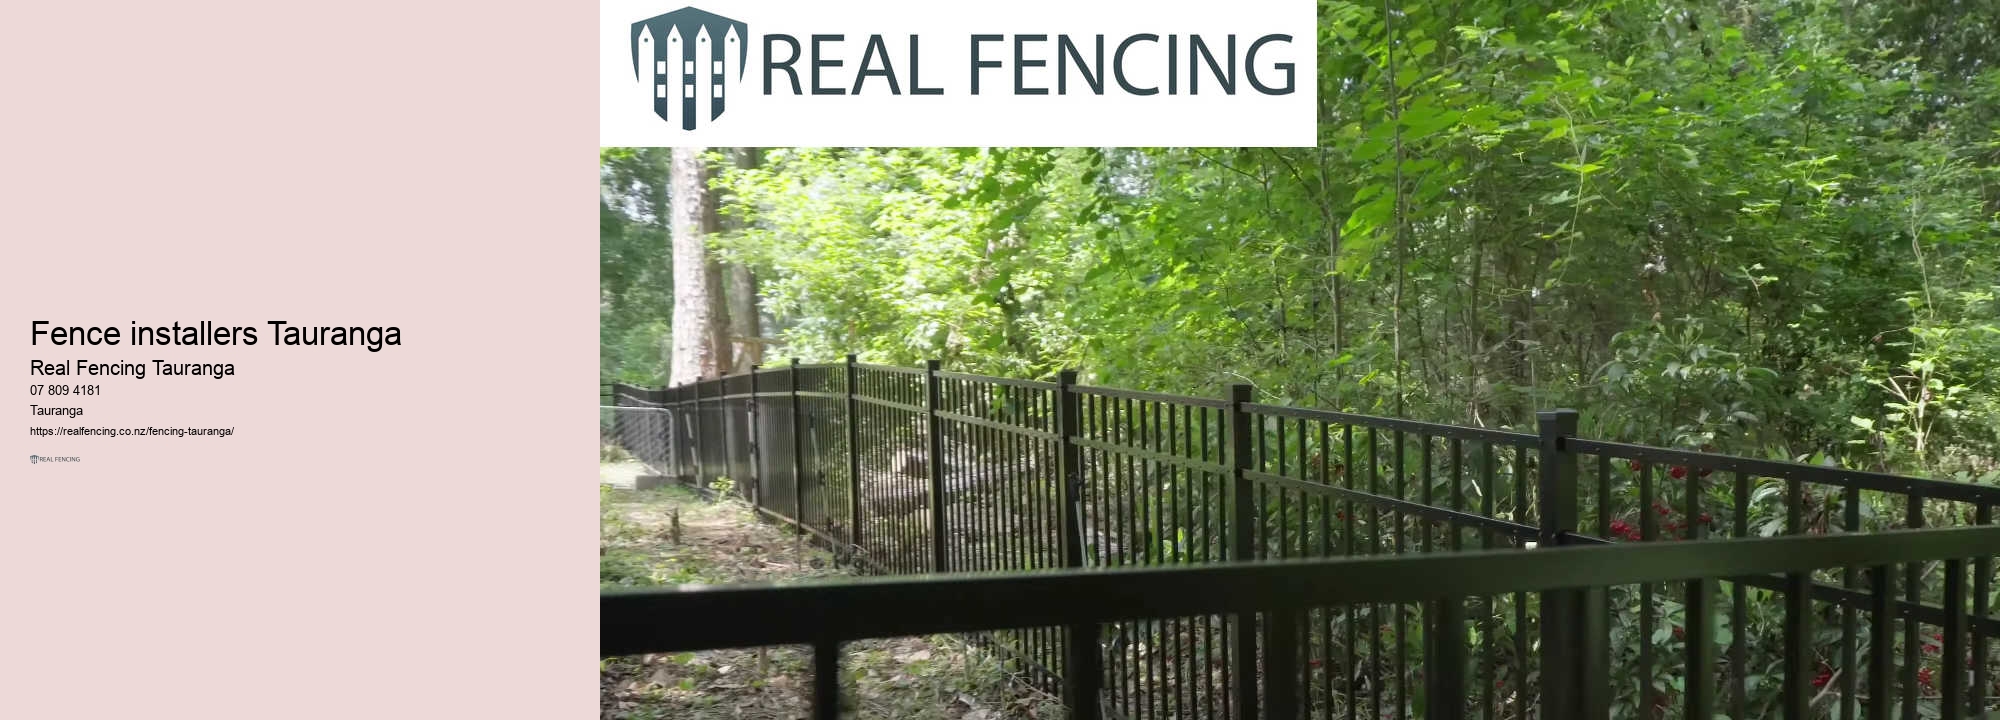 Metal fence edging